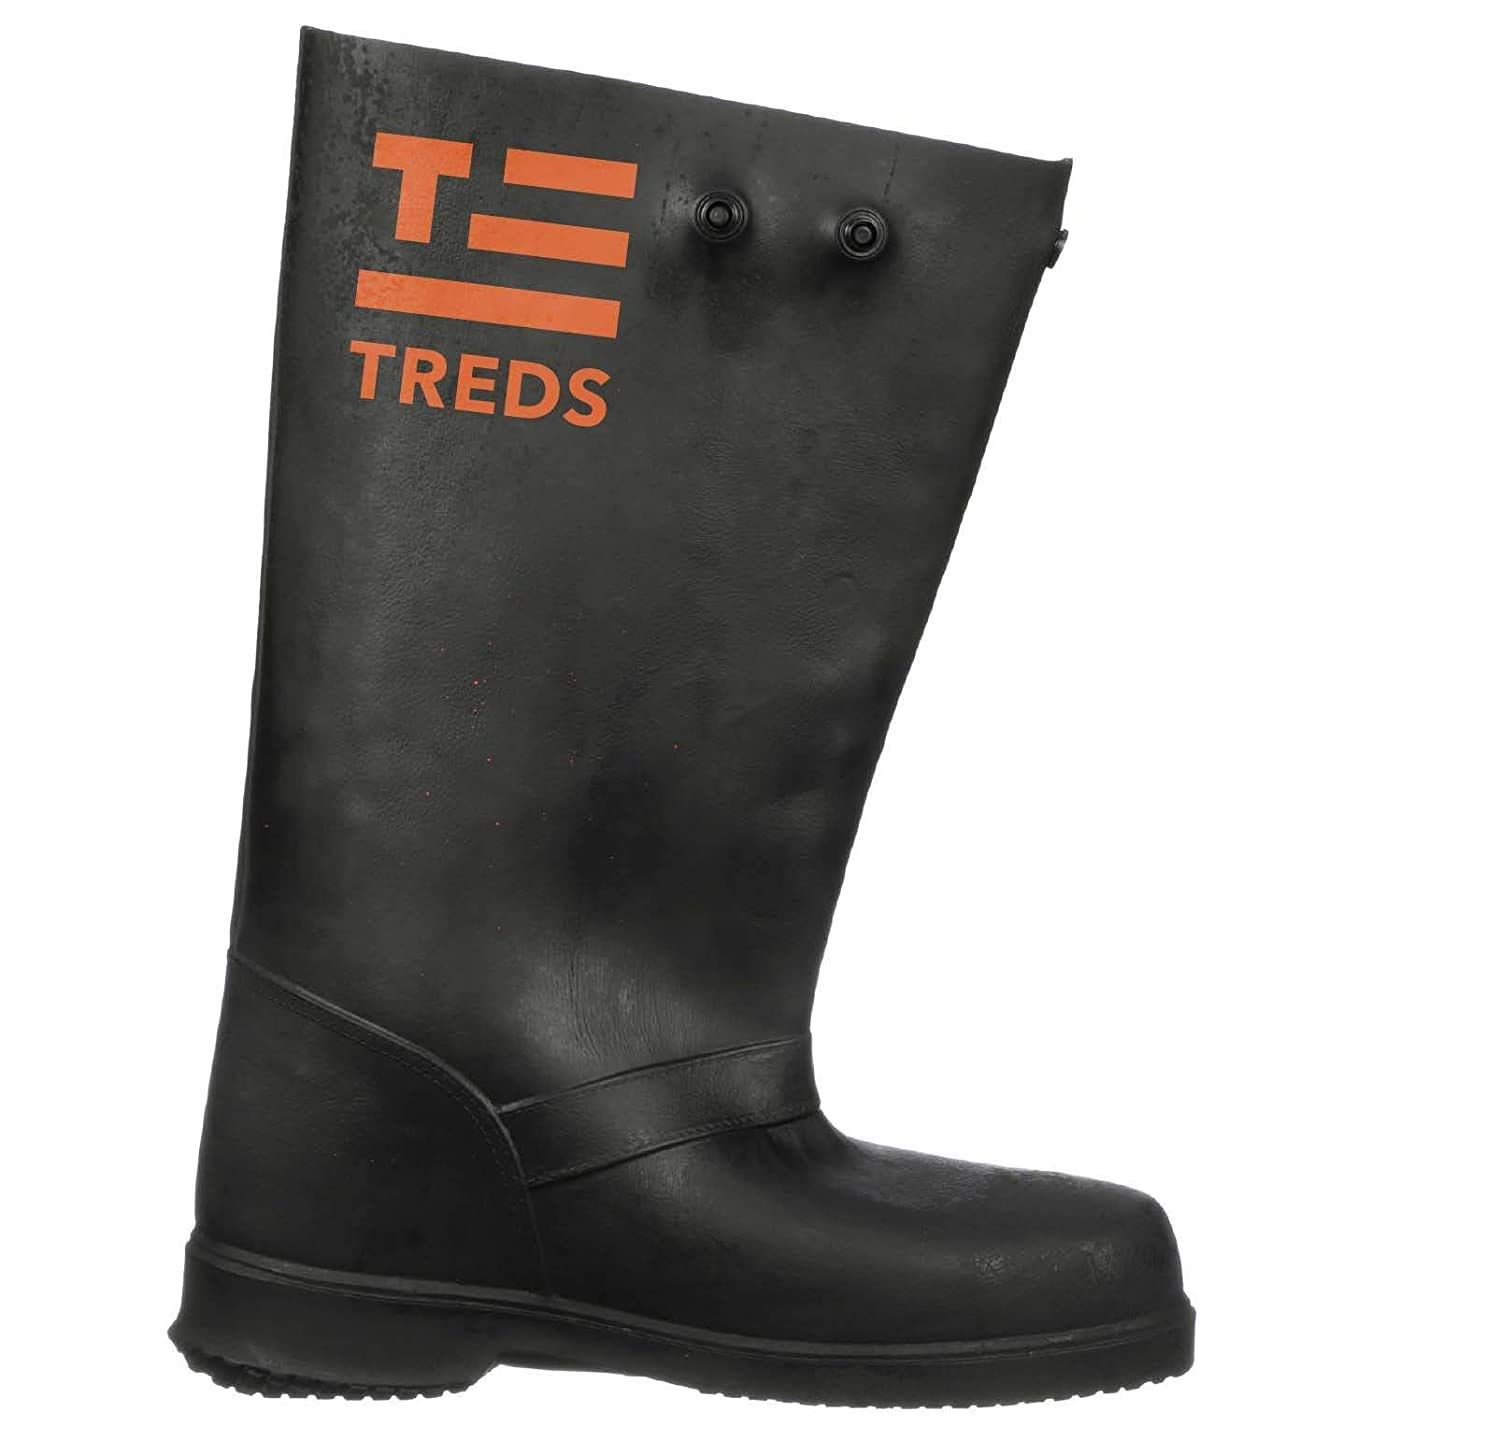 TREDS 17855 - 17&quot; Slush Boots, L/XL